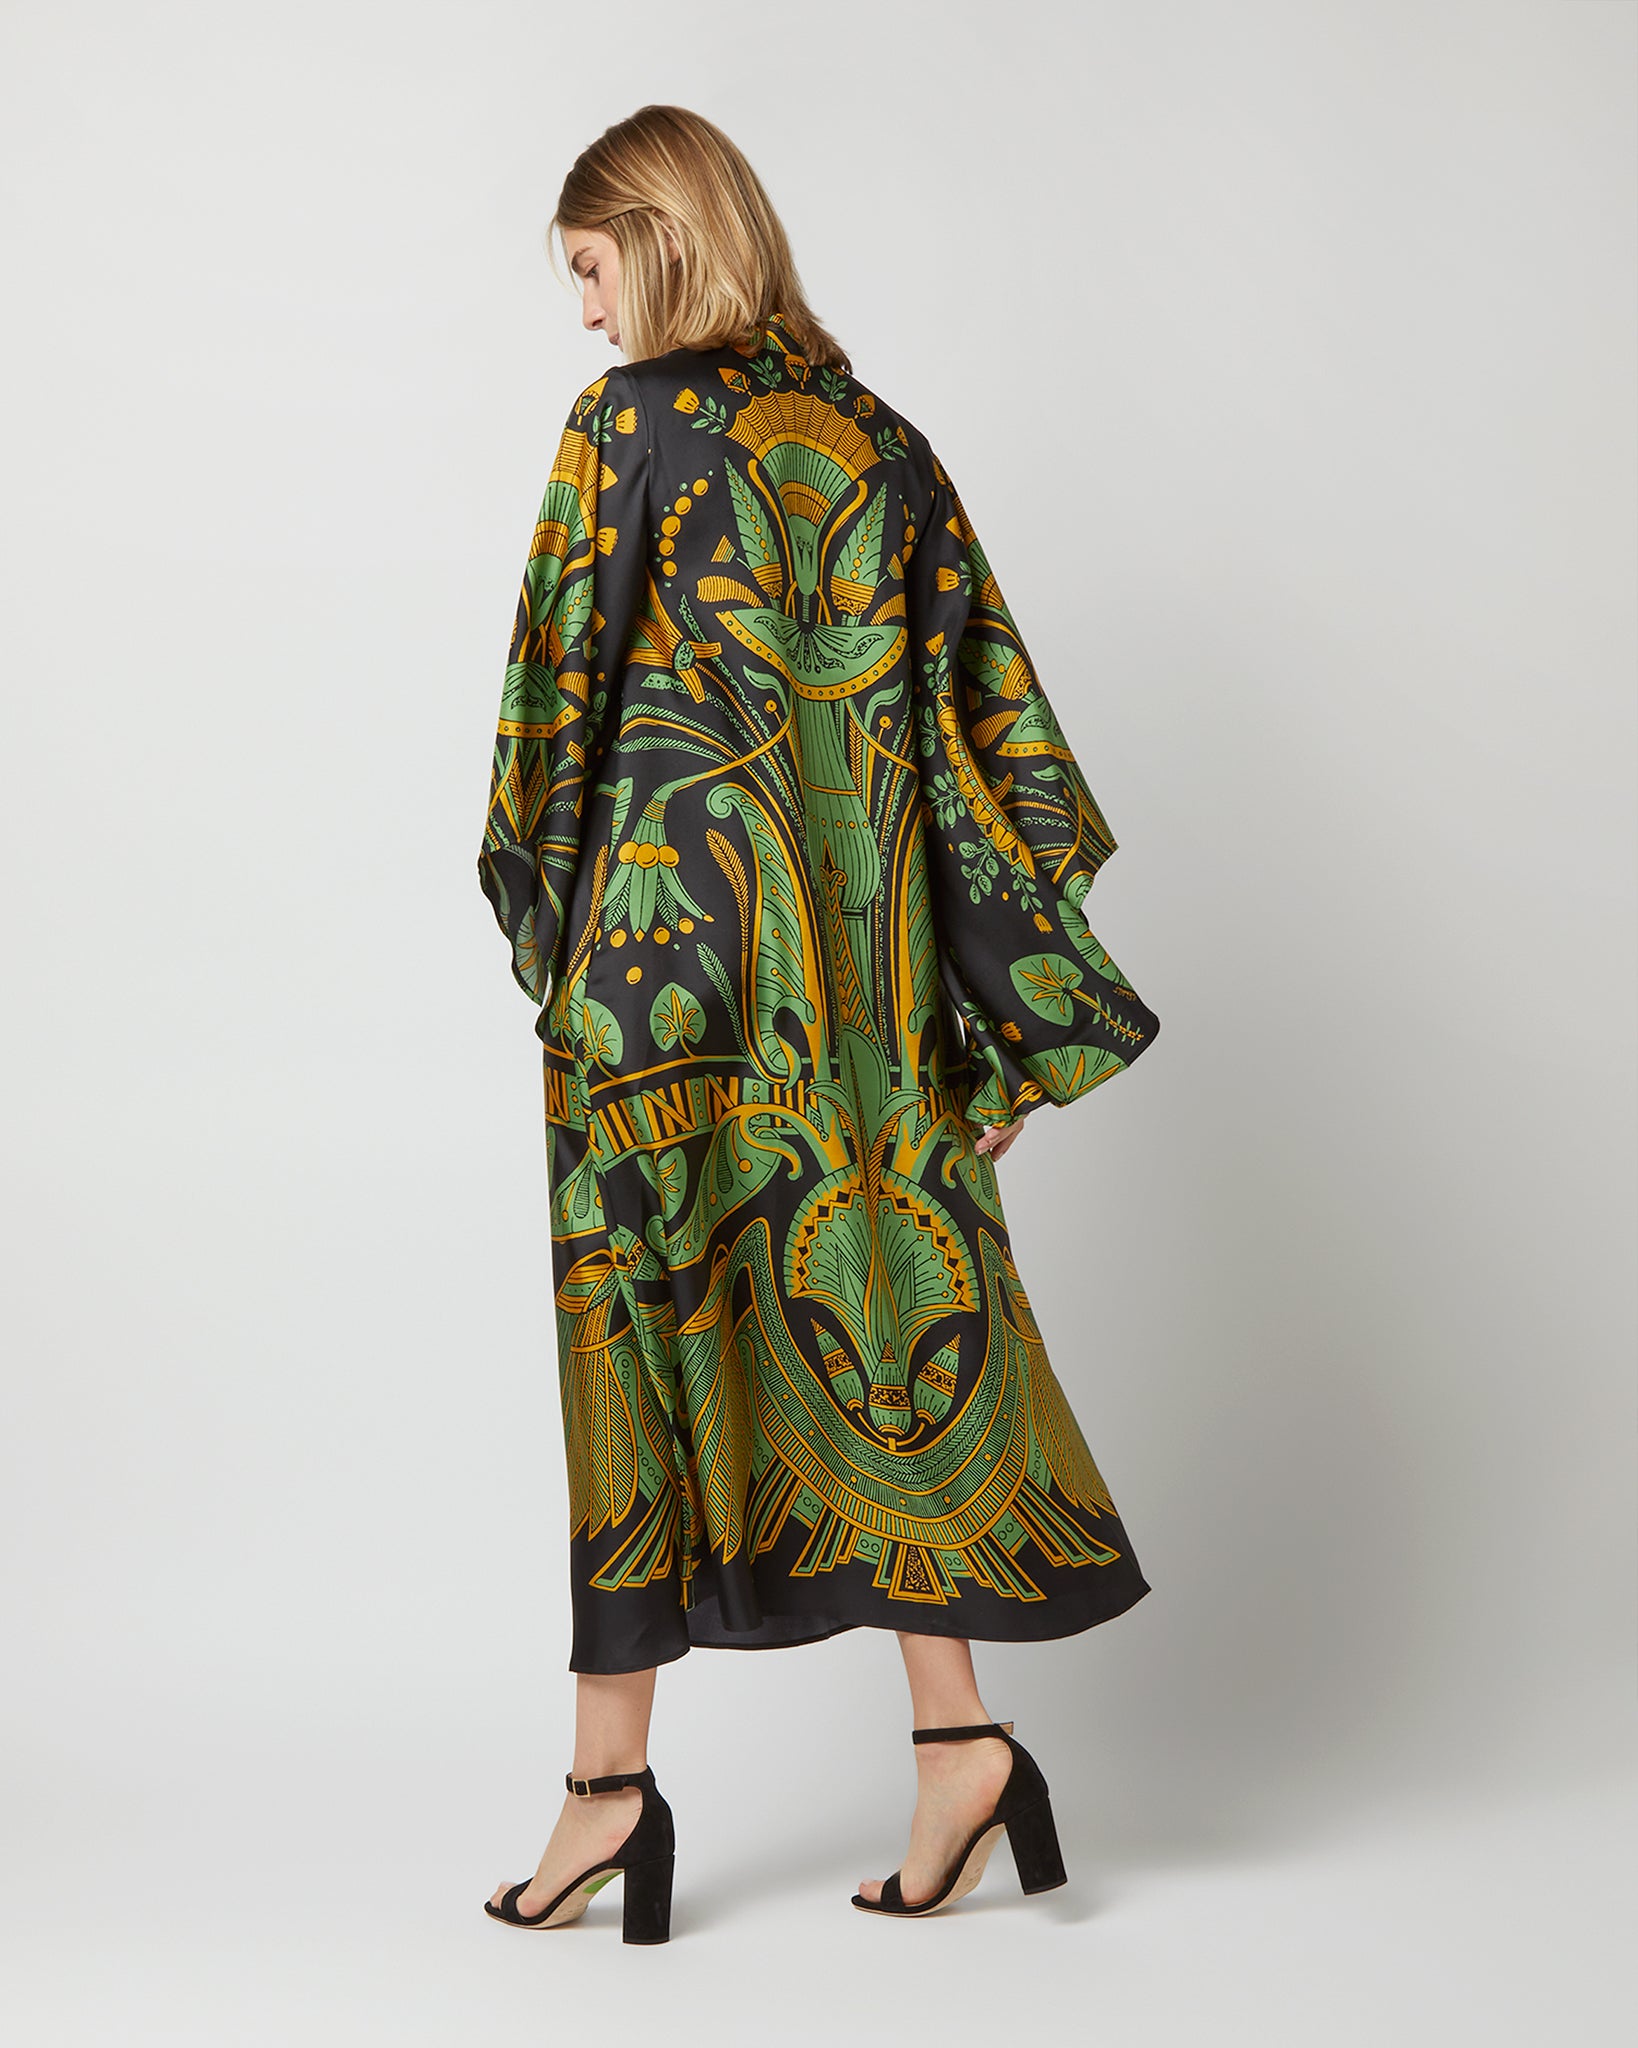 Magnifico Midi Dress in The Nile Placée Black Silk Twill